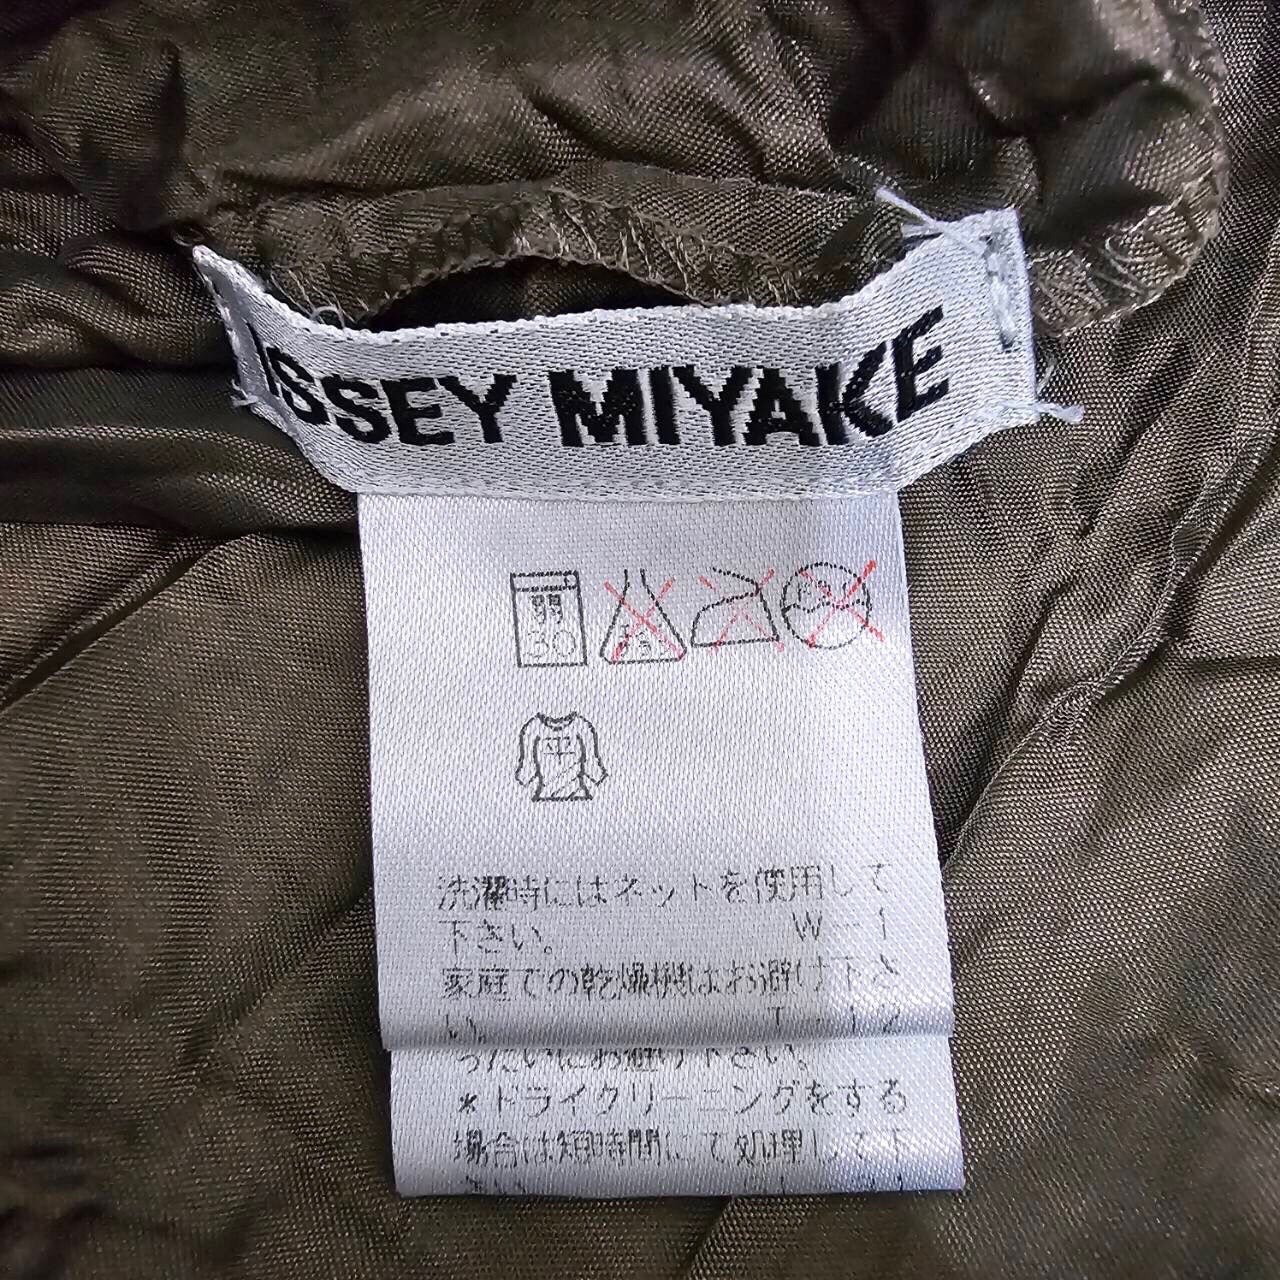 ISSEY MIYAKE(イッセイミヤケ) 98AW pleated long dress/プリーツロングワンピース/ドレス IM84-FH918  SIZE S カーキ 90's/ヴィンテージ/アーカイブ/シワ加工